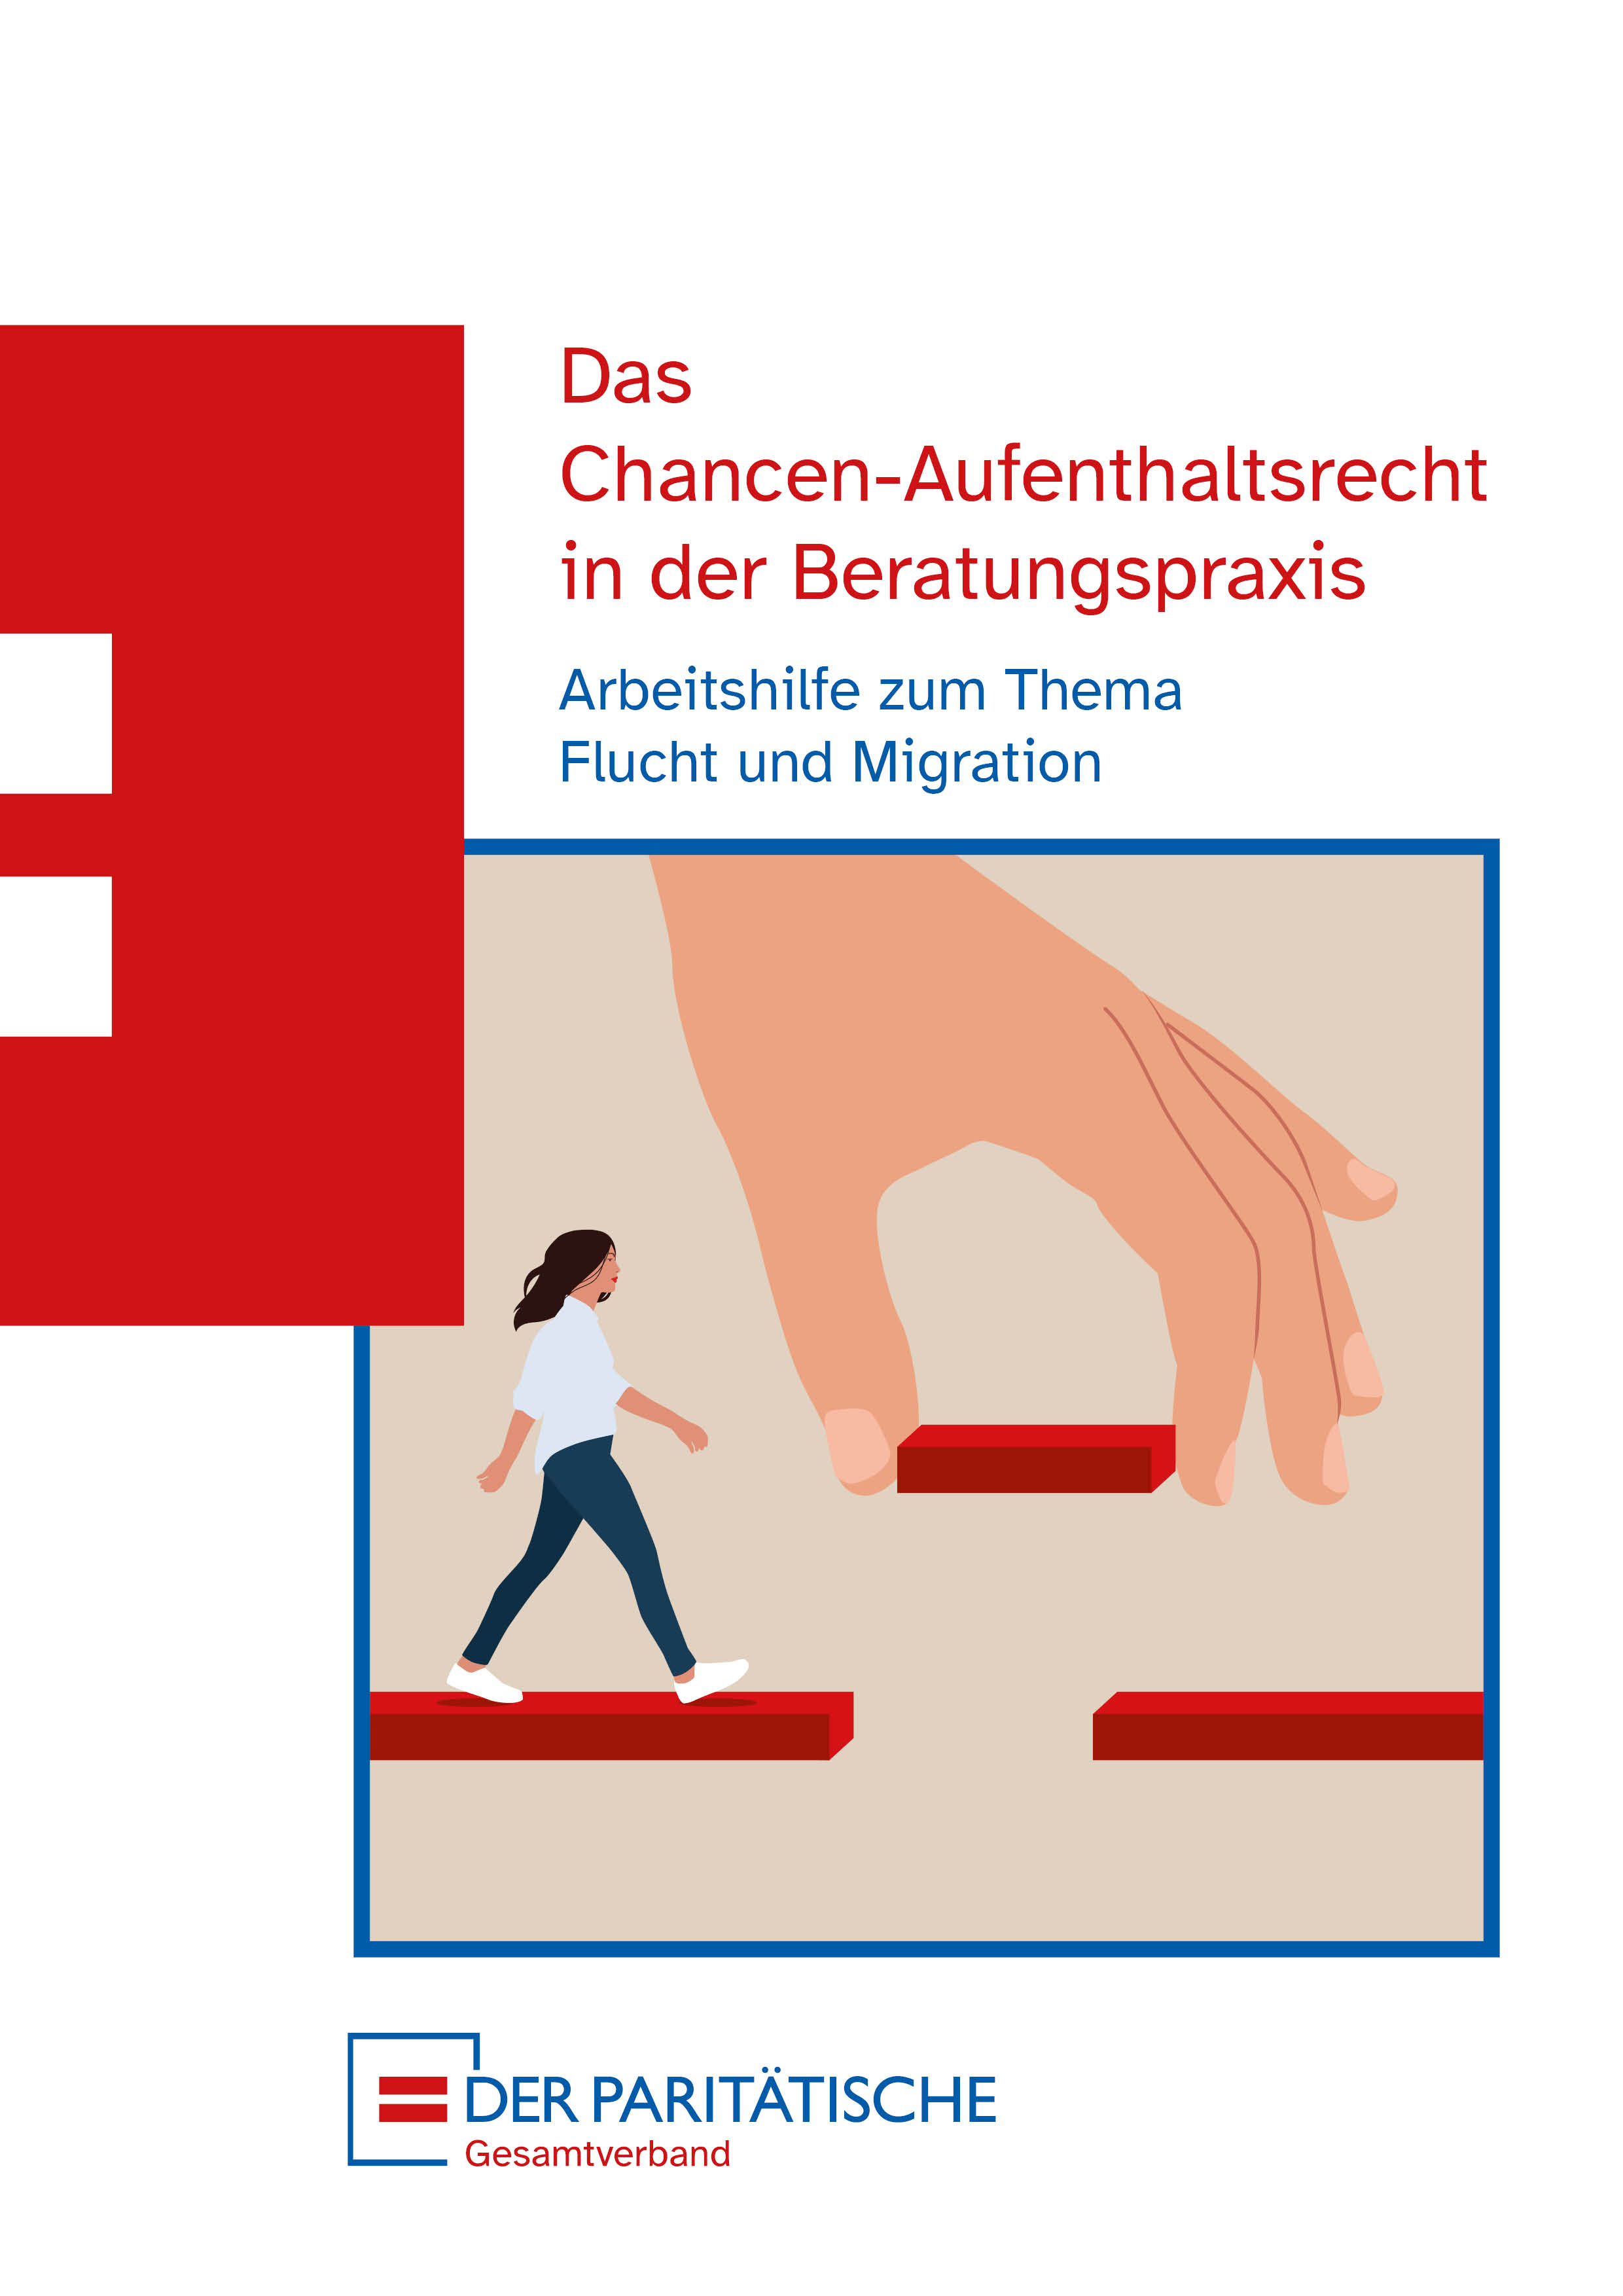 Titelbild der Broschüre "Das  Chancen-Aufenthaltsrecht in der Beratungspraxis  Arbeitshilfe zum Thema  Flucht und Migration"